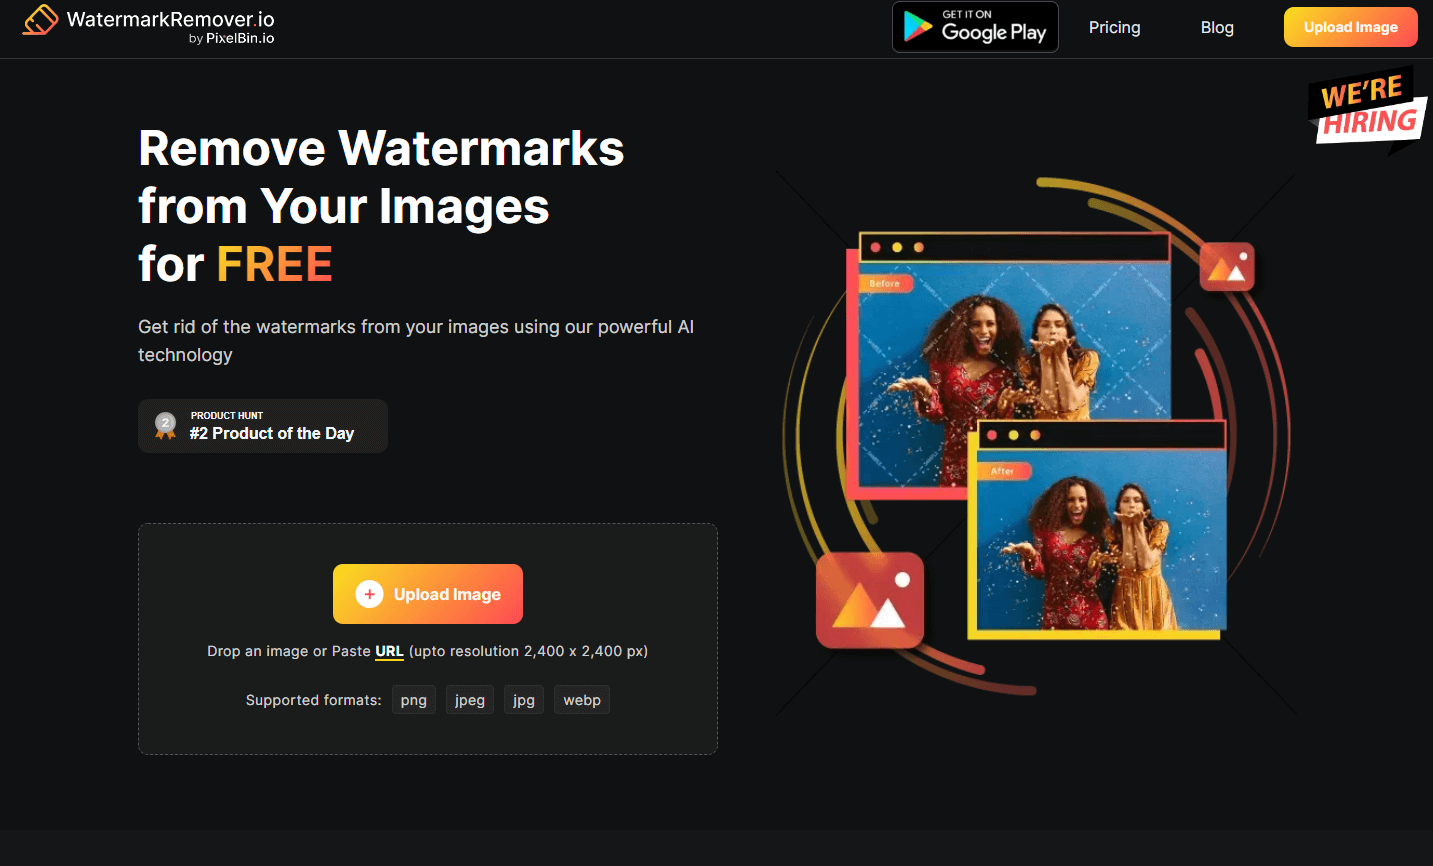 watermarkremover.io official website